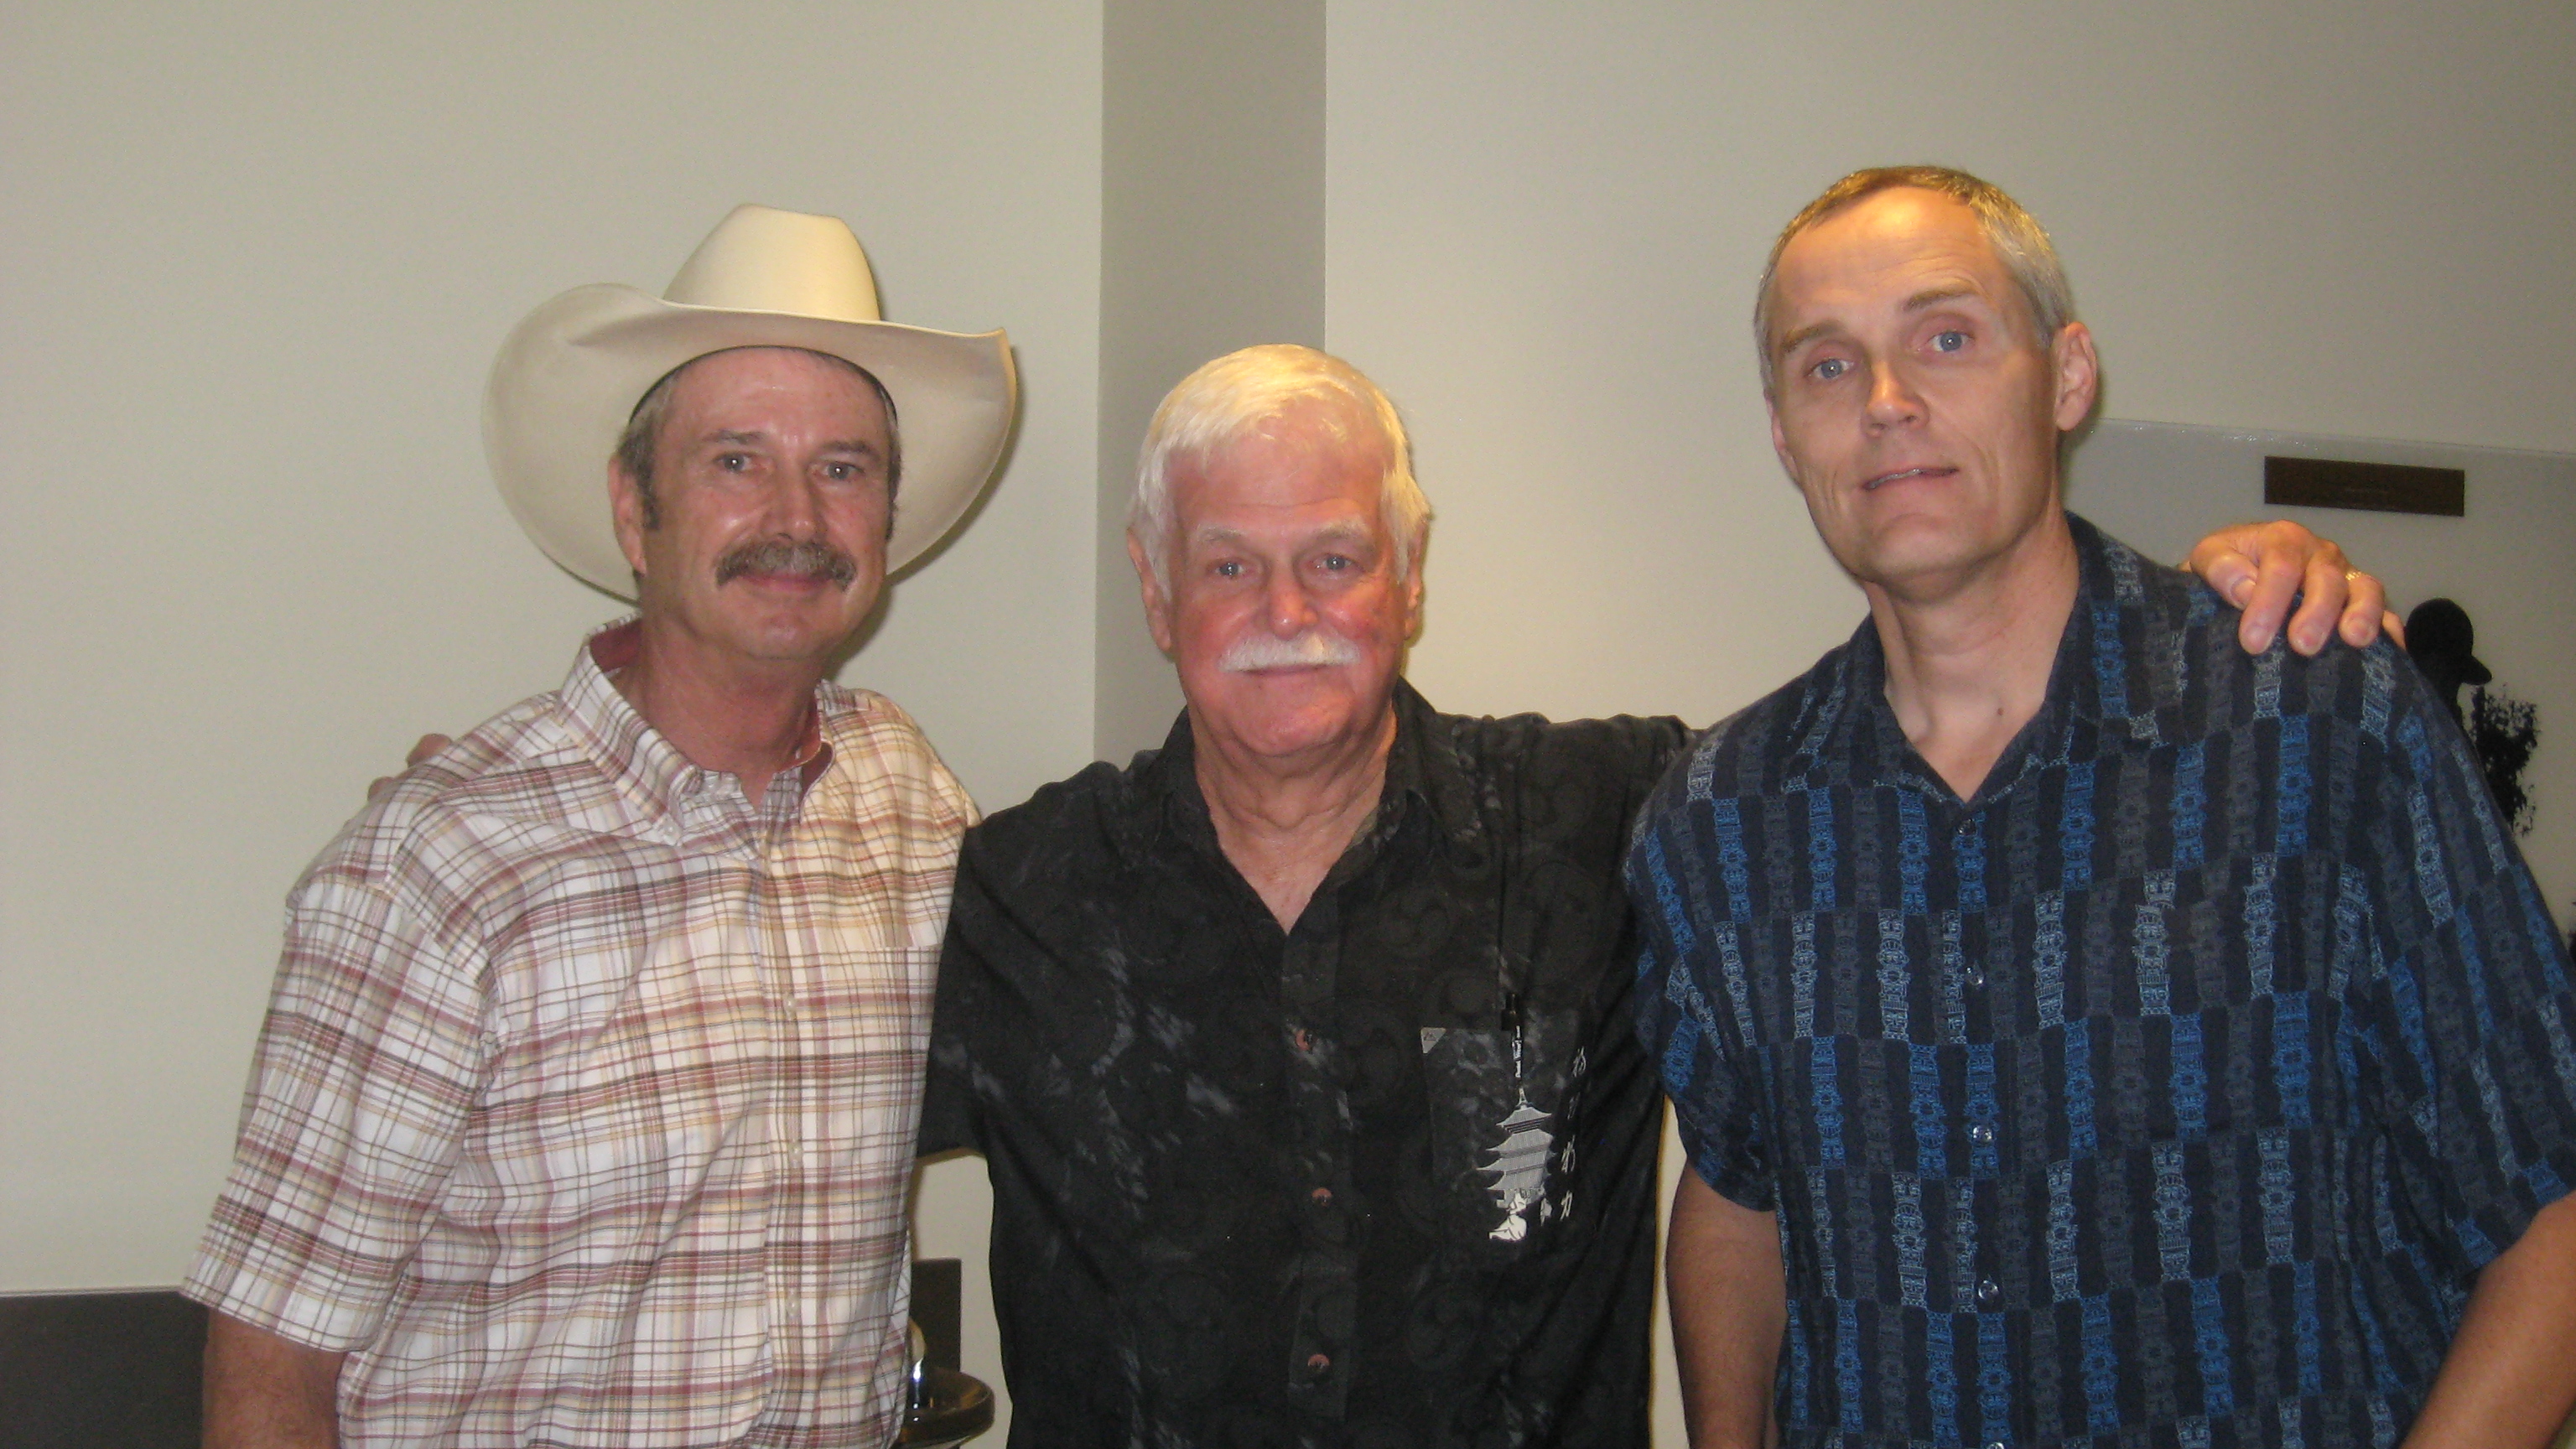 With Gary Warner Kent and Bob Ivy at the 